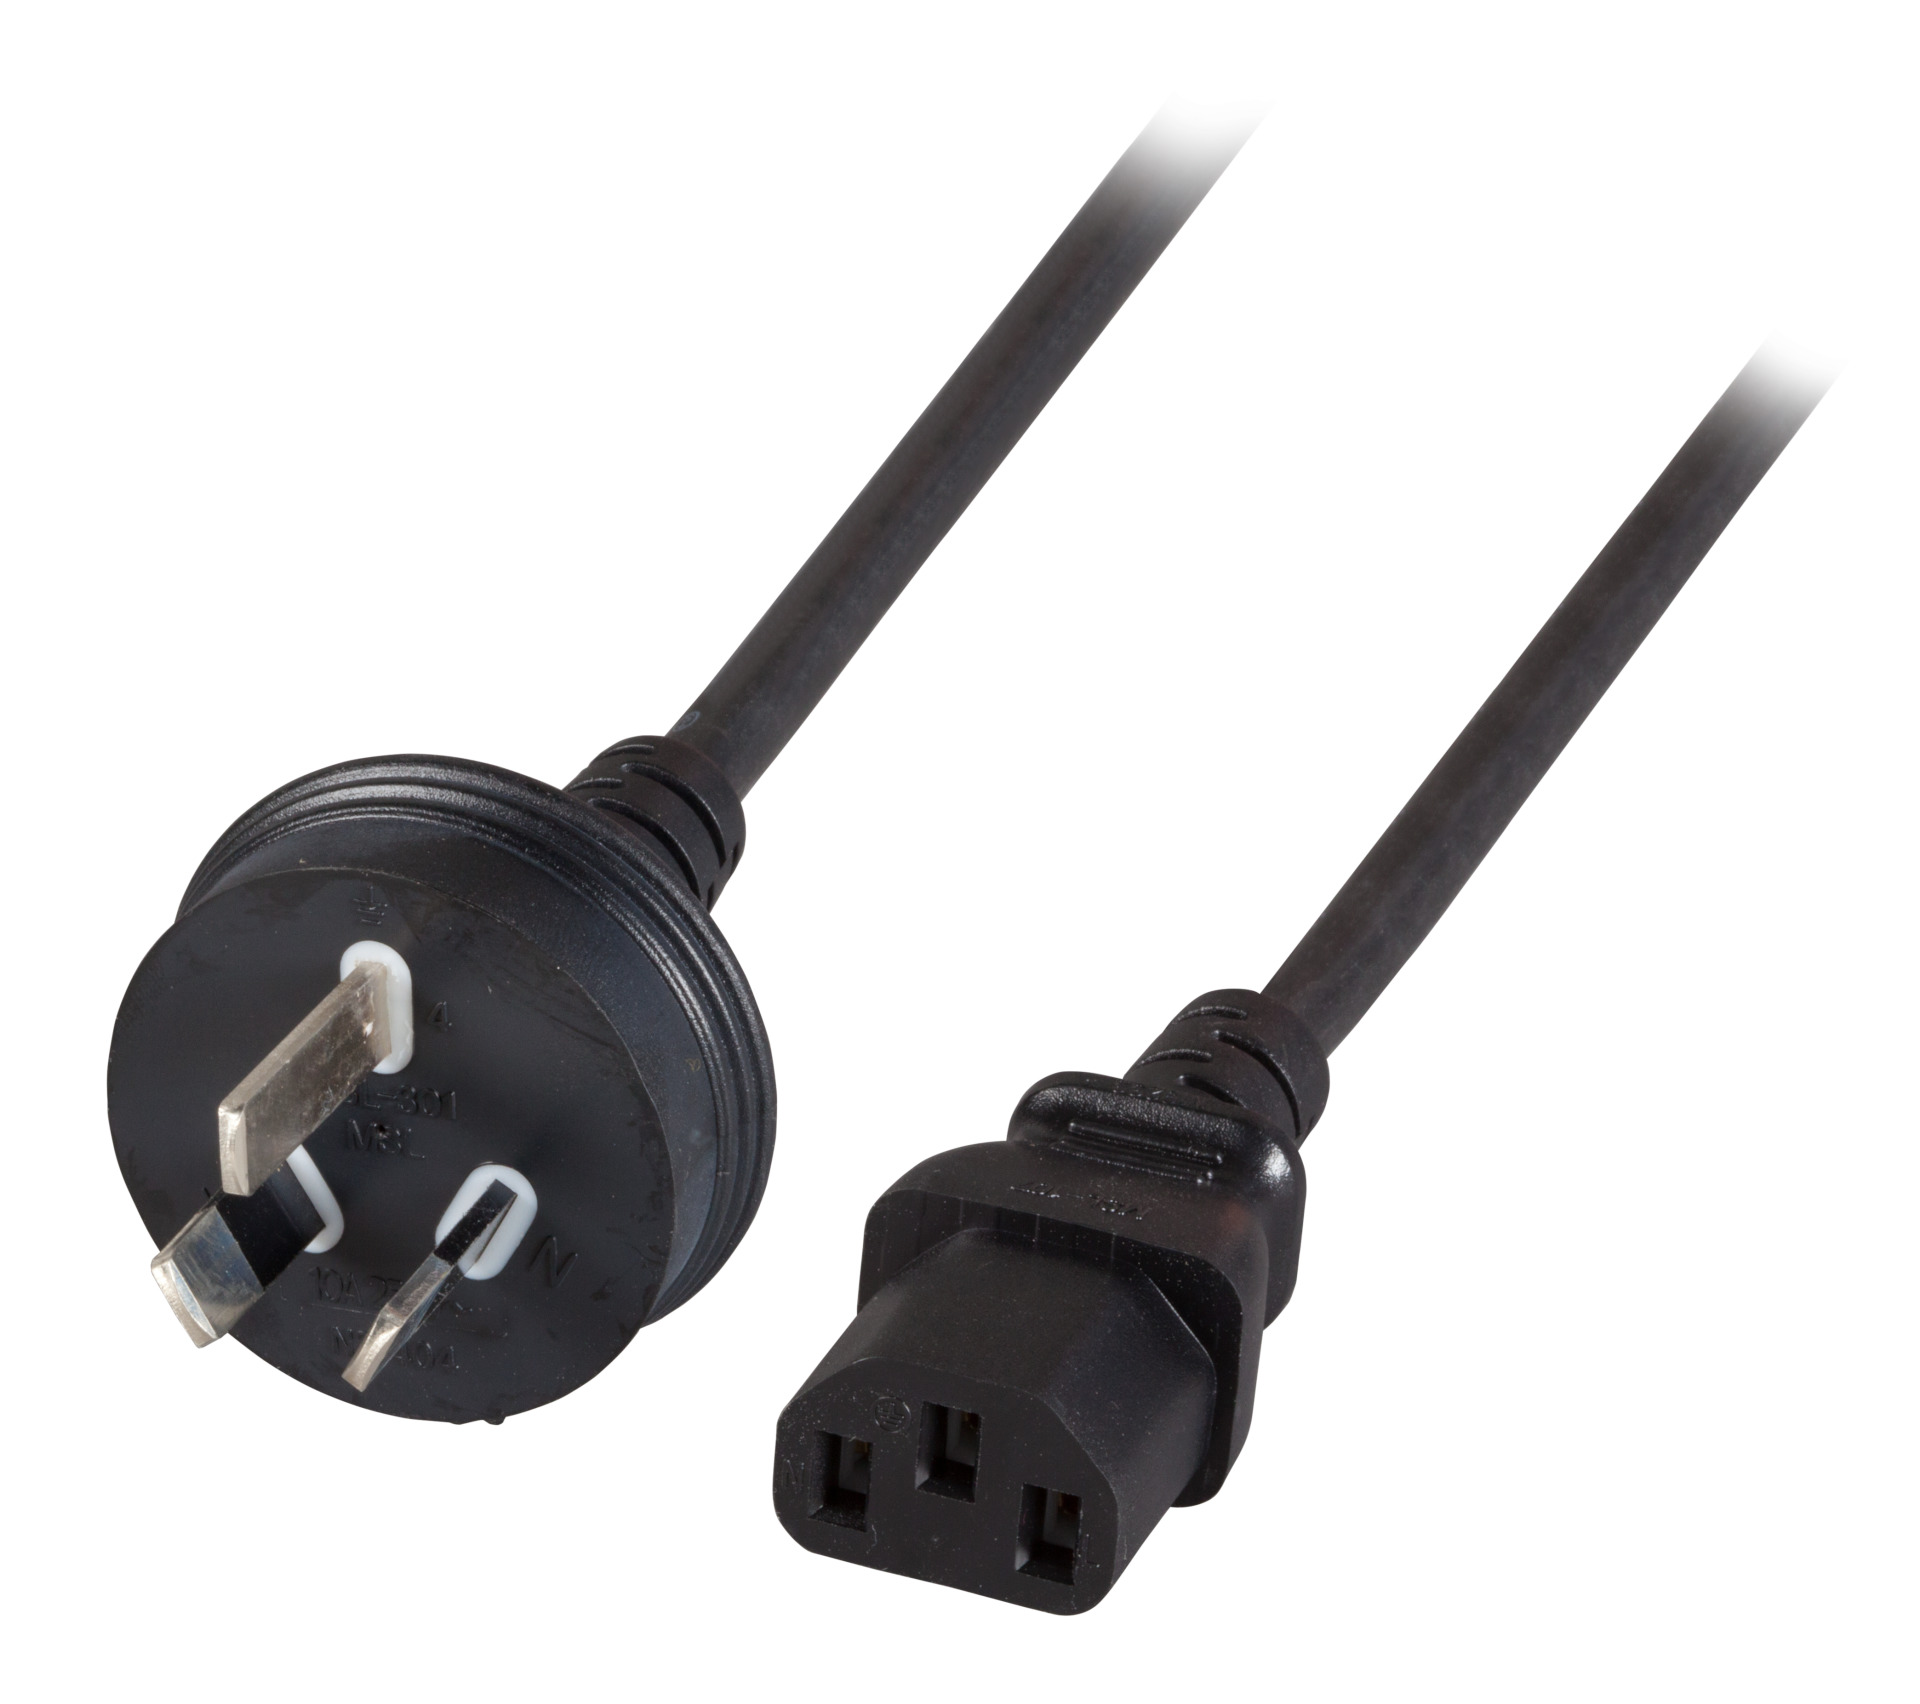 Power Cable Australia - C13 180°, Black, 1.8 m, 3 x 0.75 mm²